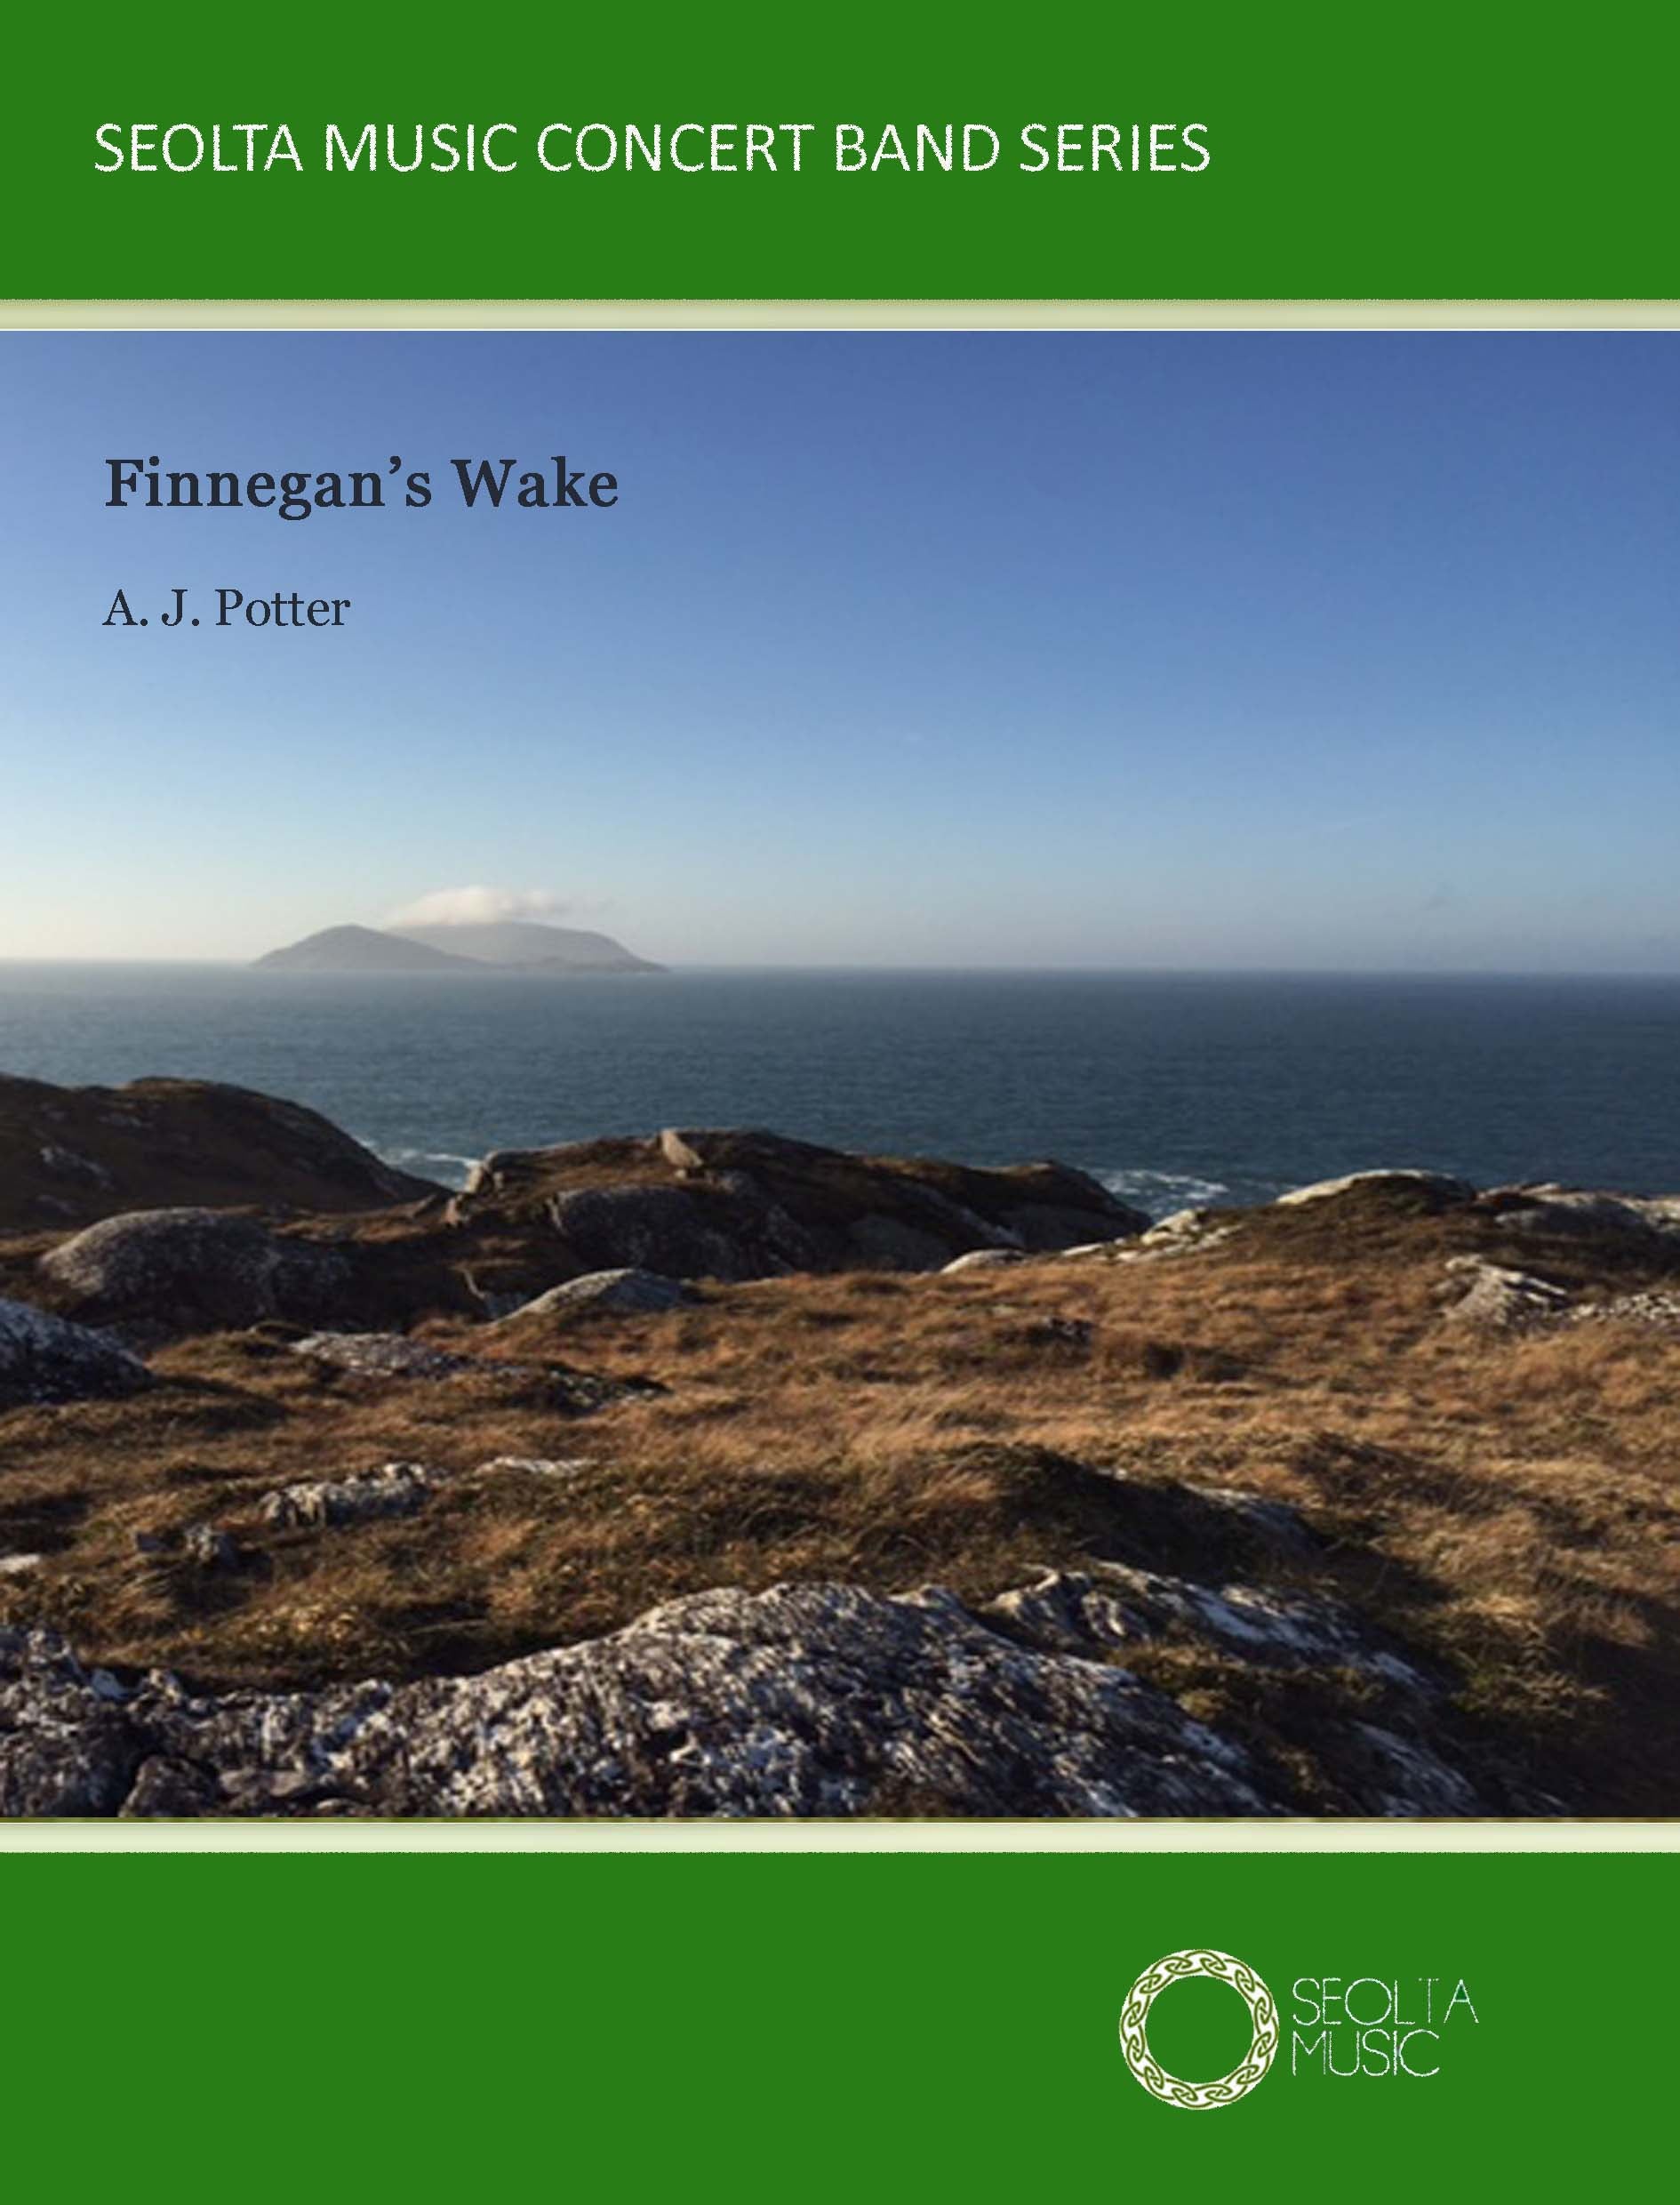 finnegans-wake-irish-concert-band-sheet-music